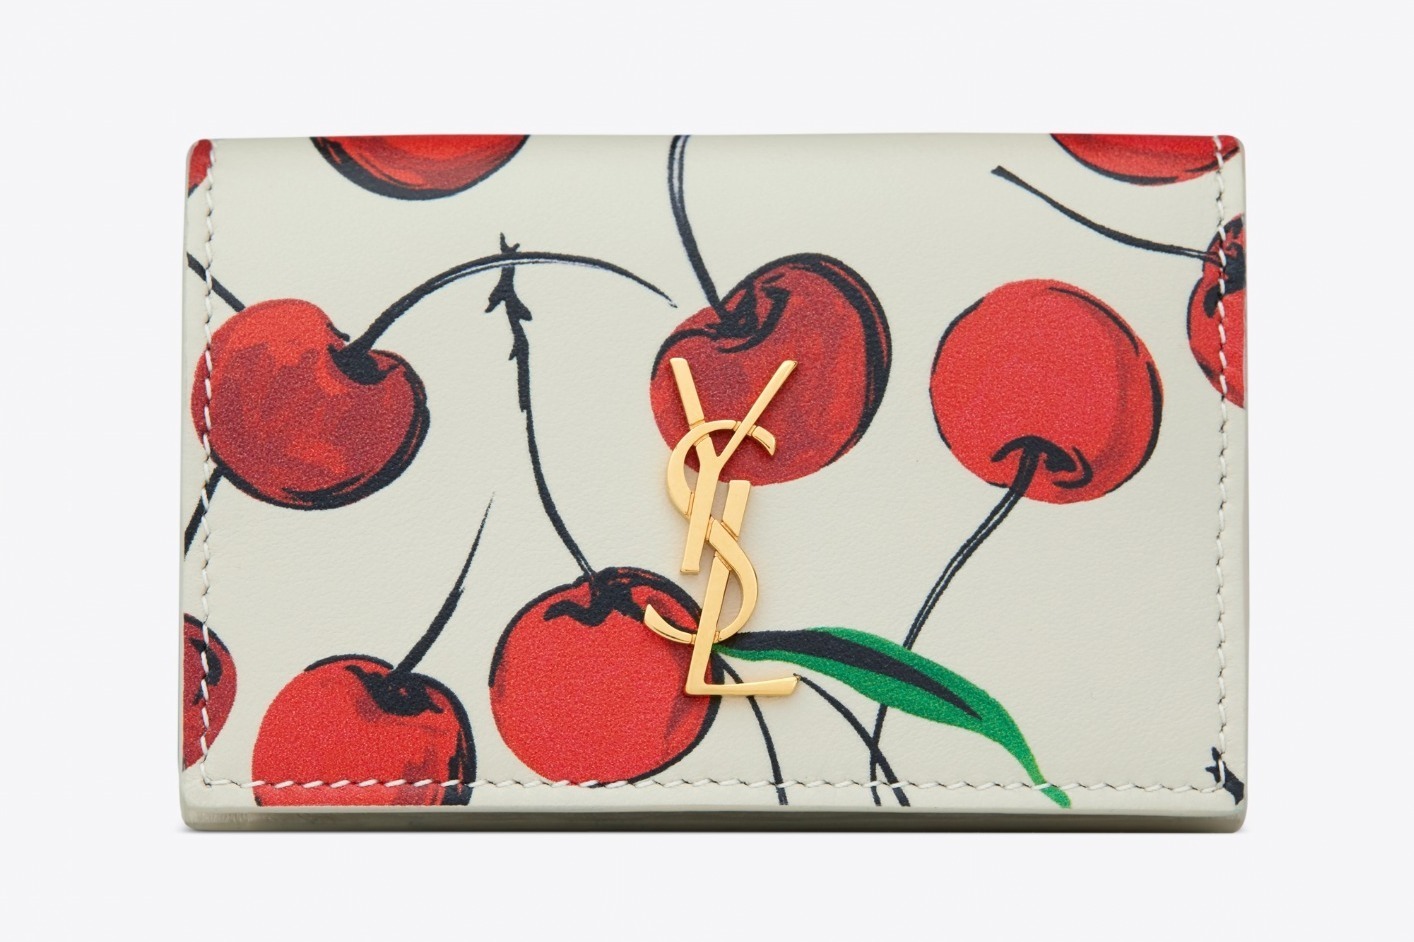 サンローラン“真っ赤なチェリー柄”ミニ財布やiPhoneケース、日本限定で